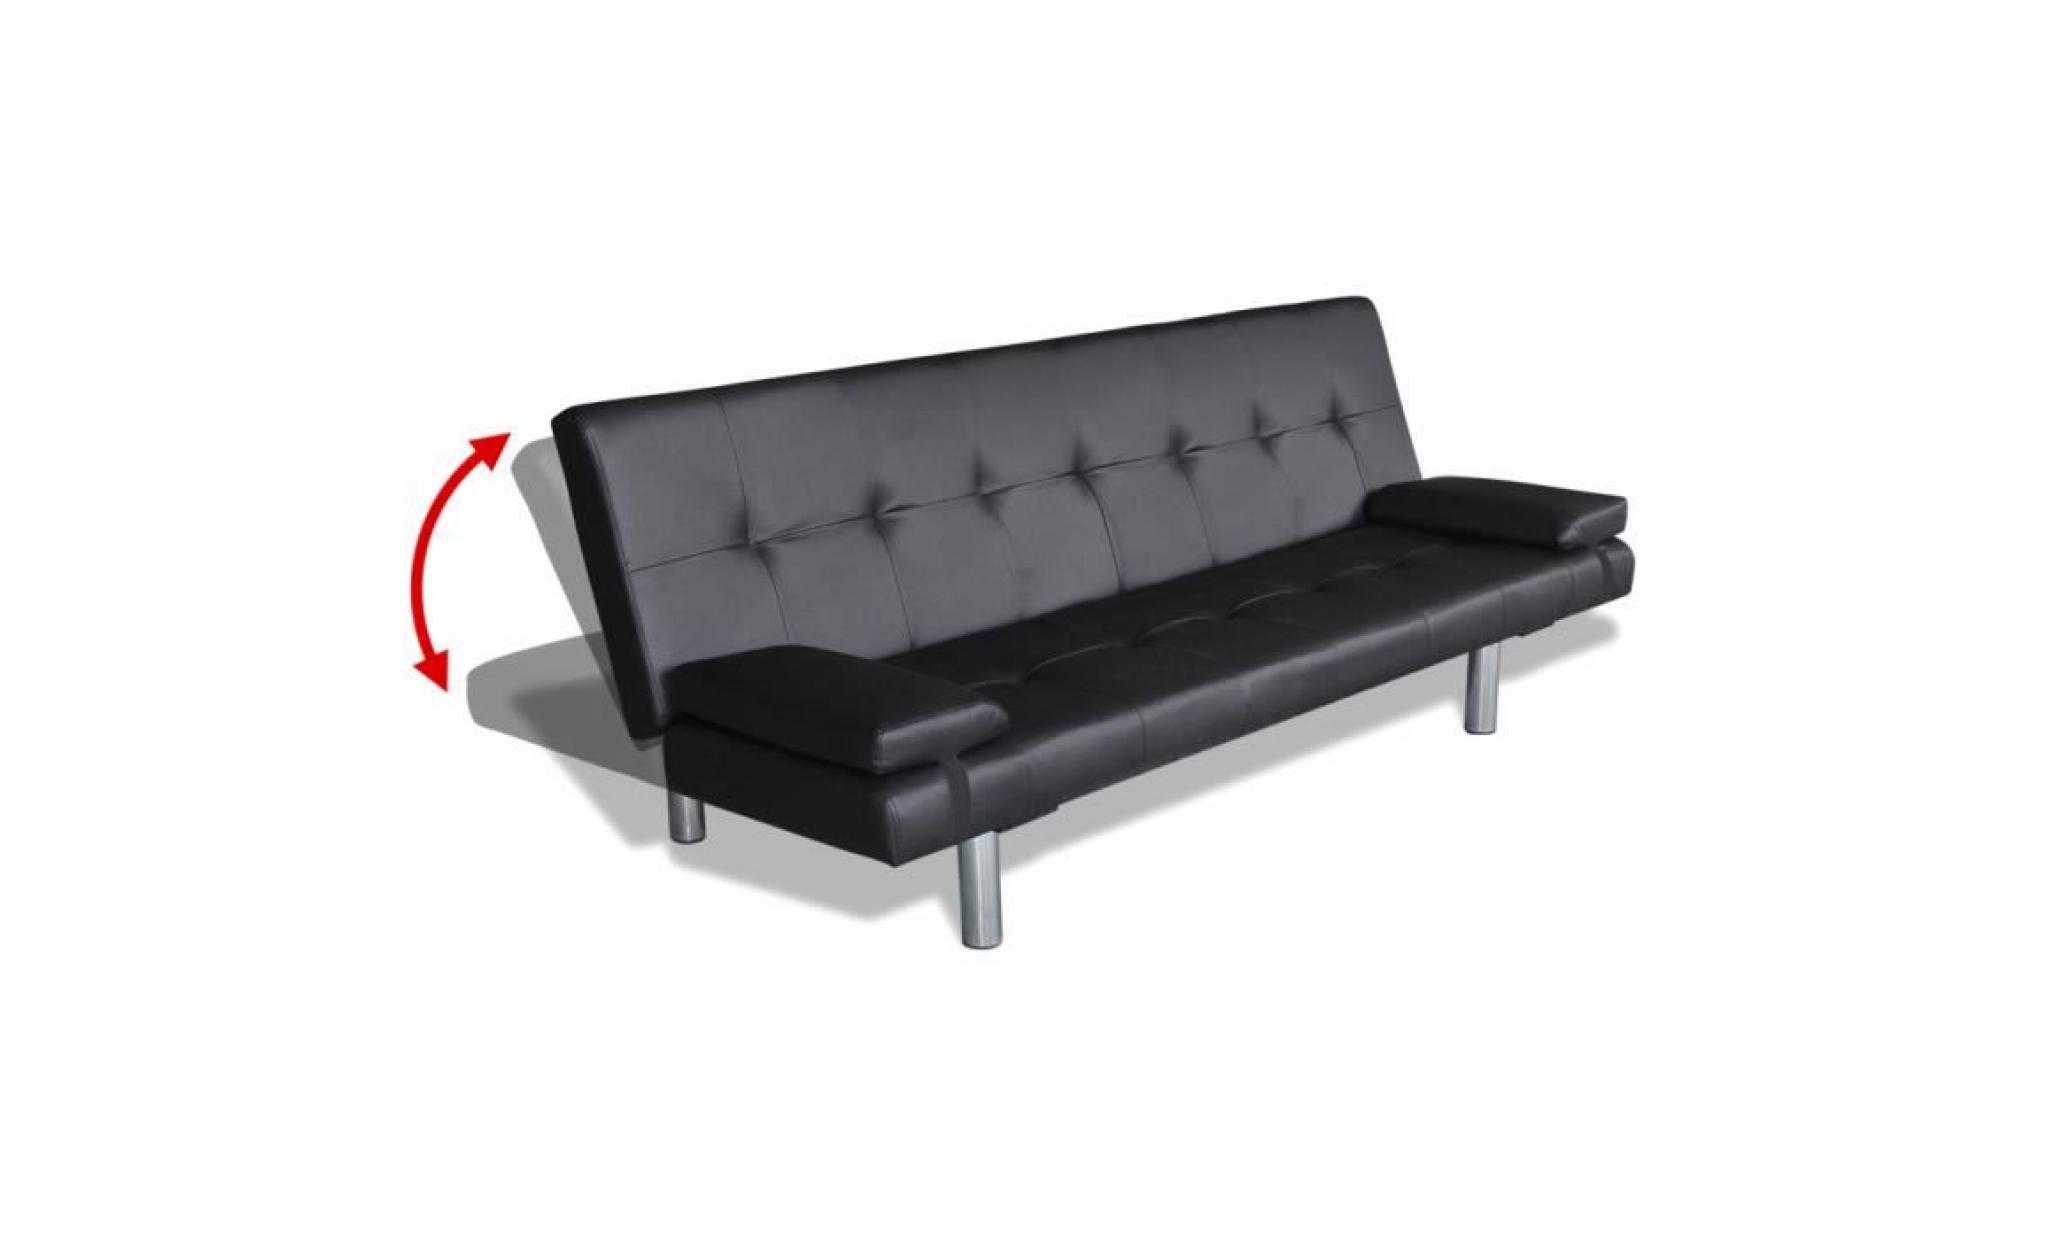 canapé lit ajustable clic clac en bois + cuir artificiel pour intérieur maison avec 2 oreillers noir pas cher